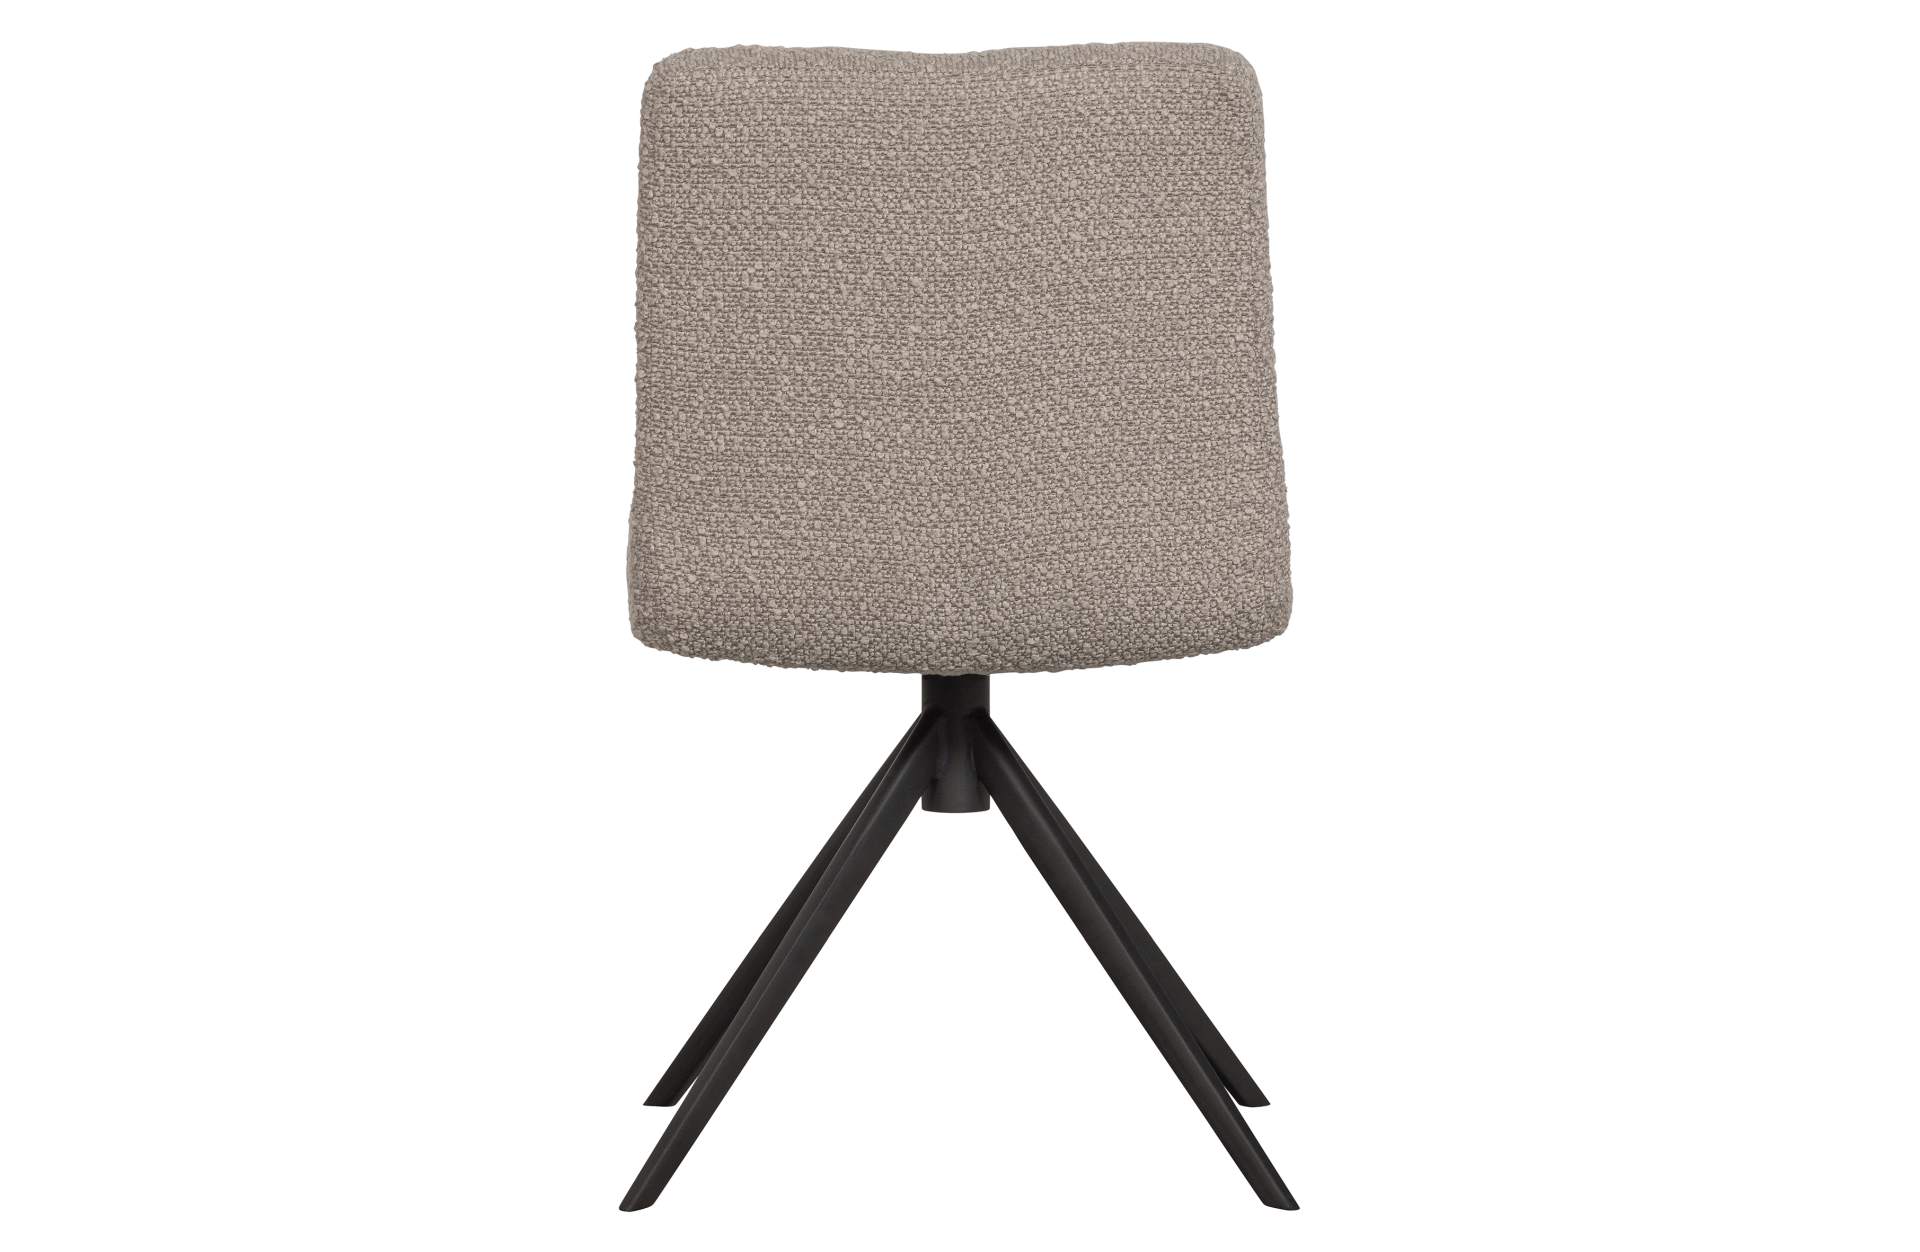 Der Esszimmerstuhl Vinny überzeugt mit seinem modernem Design. Gefertigt wurde der Stuhl aus einem Boucle Stoff, welcher einen Sand Farbton besitzt. Das Gestell ist aus Metall und hat eine schwarze Farbe.